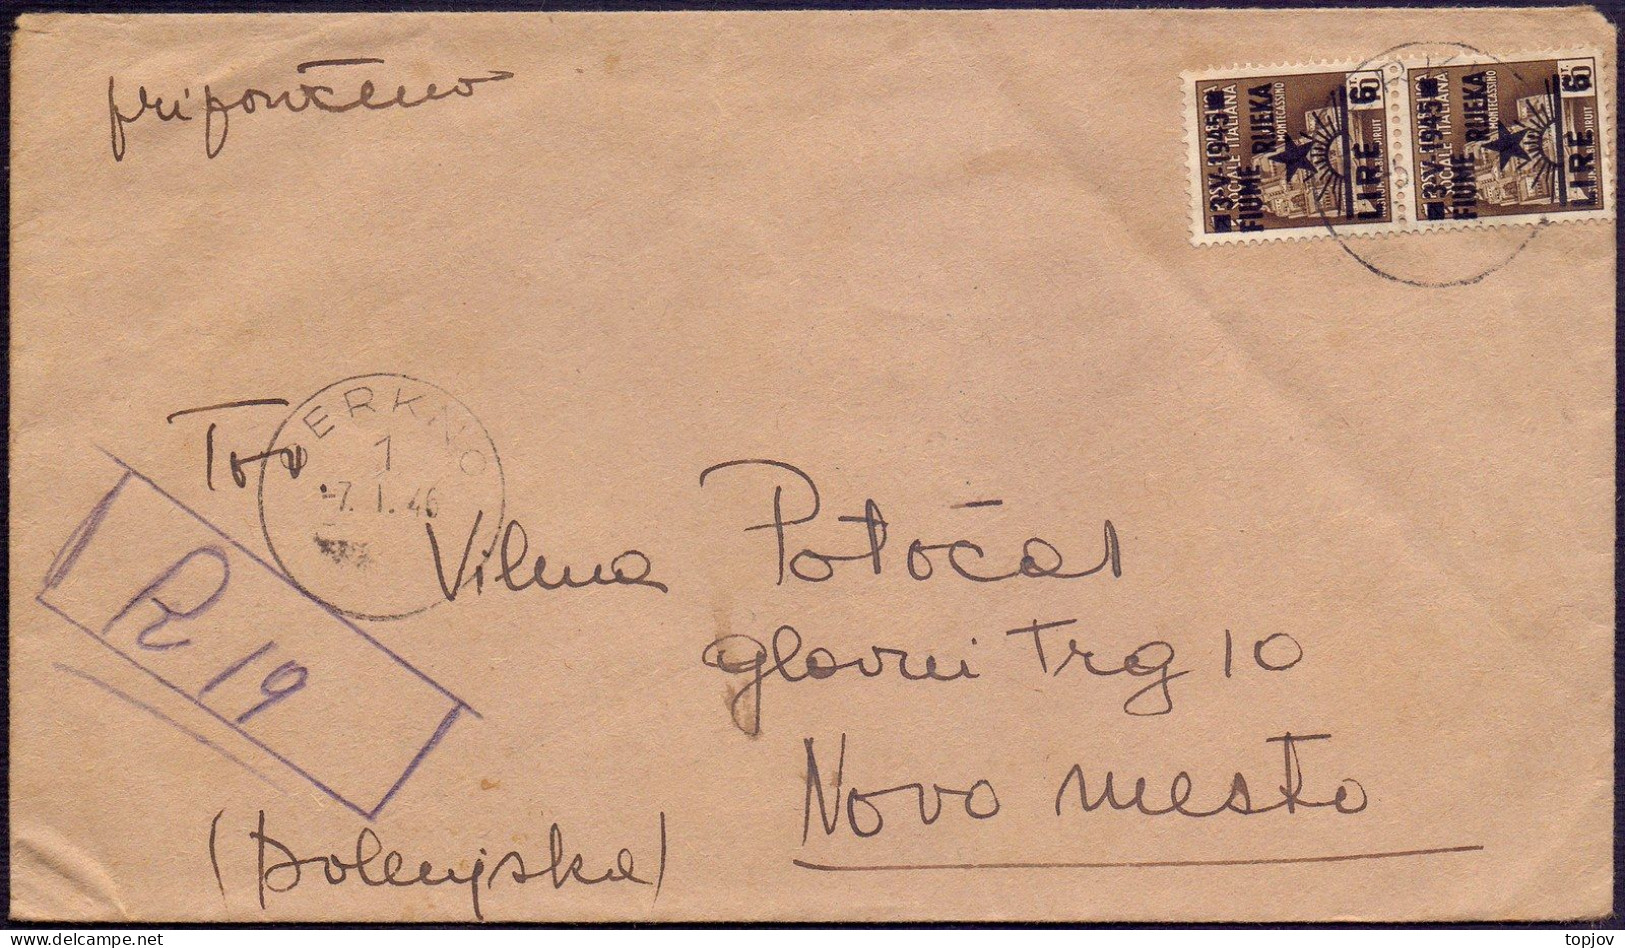 SLOVENIA LITORALE - CERKNO To NOVO MESTO - RECOM. LETTER 12Lira - 7. 1. 1946. - Marcophilie